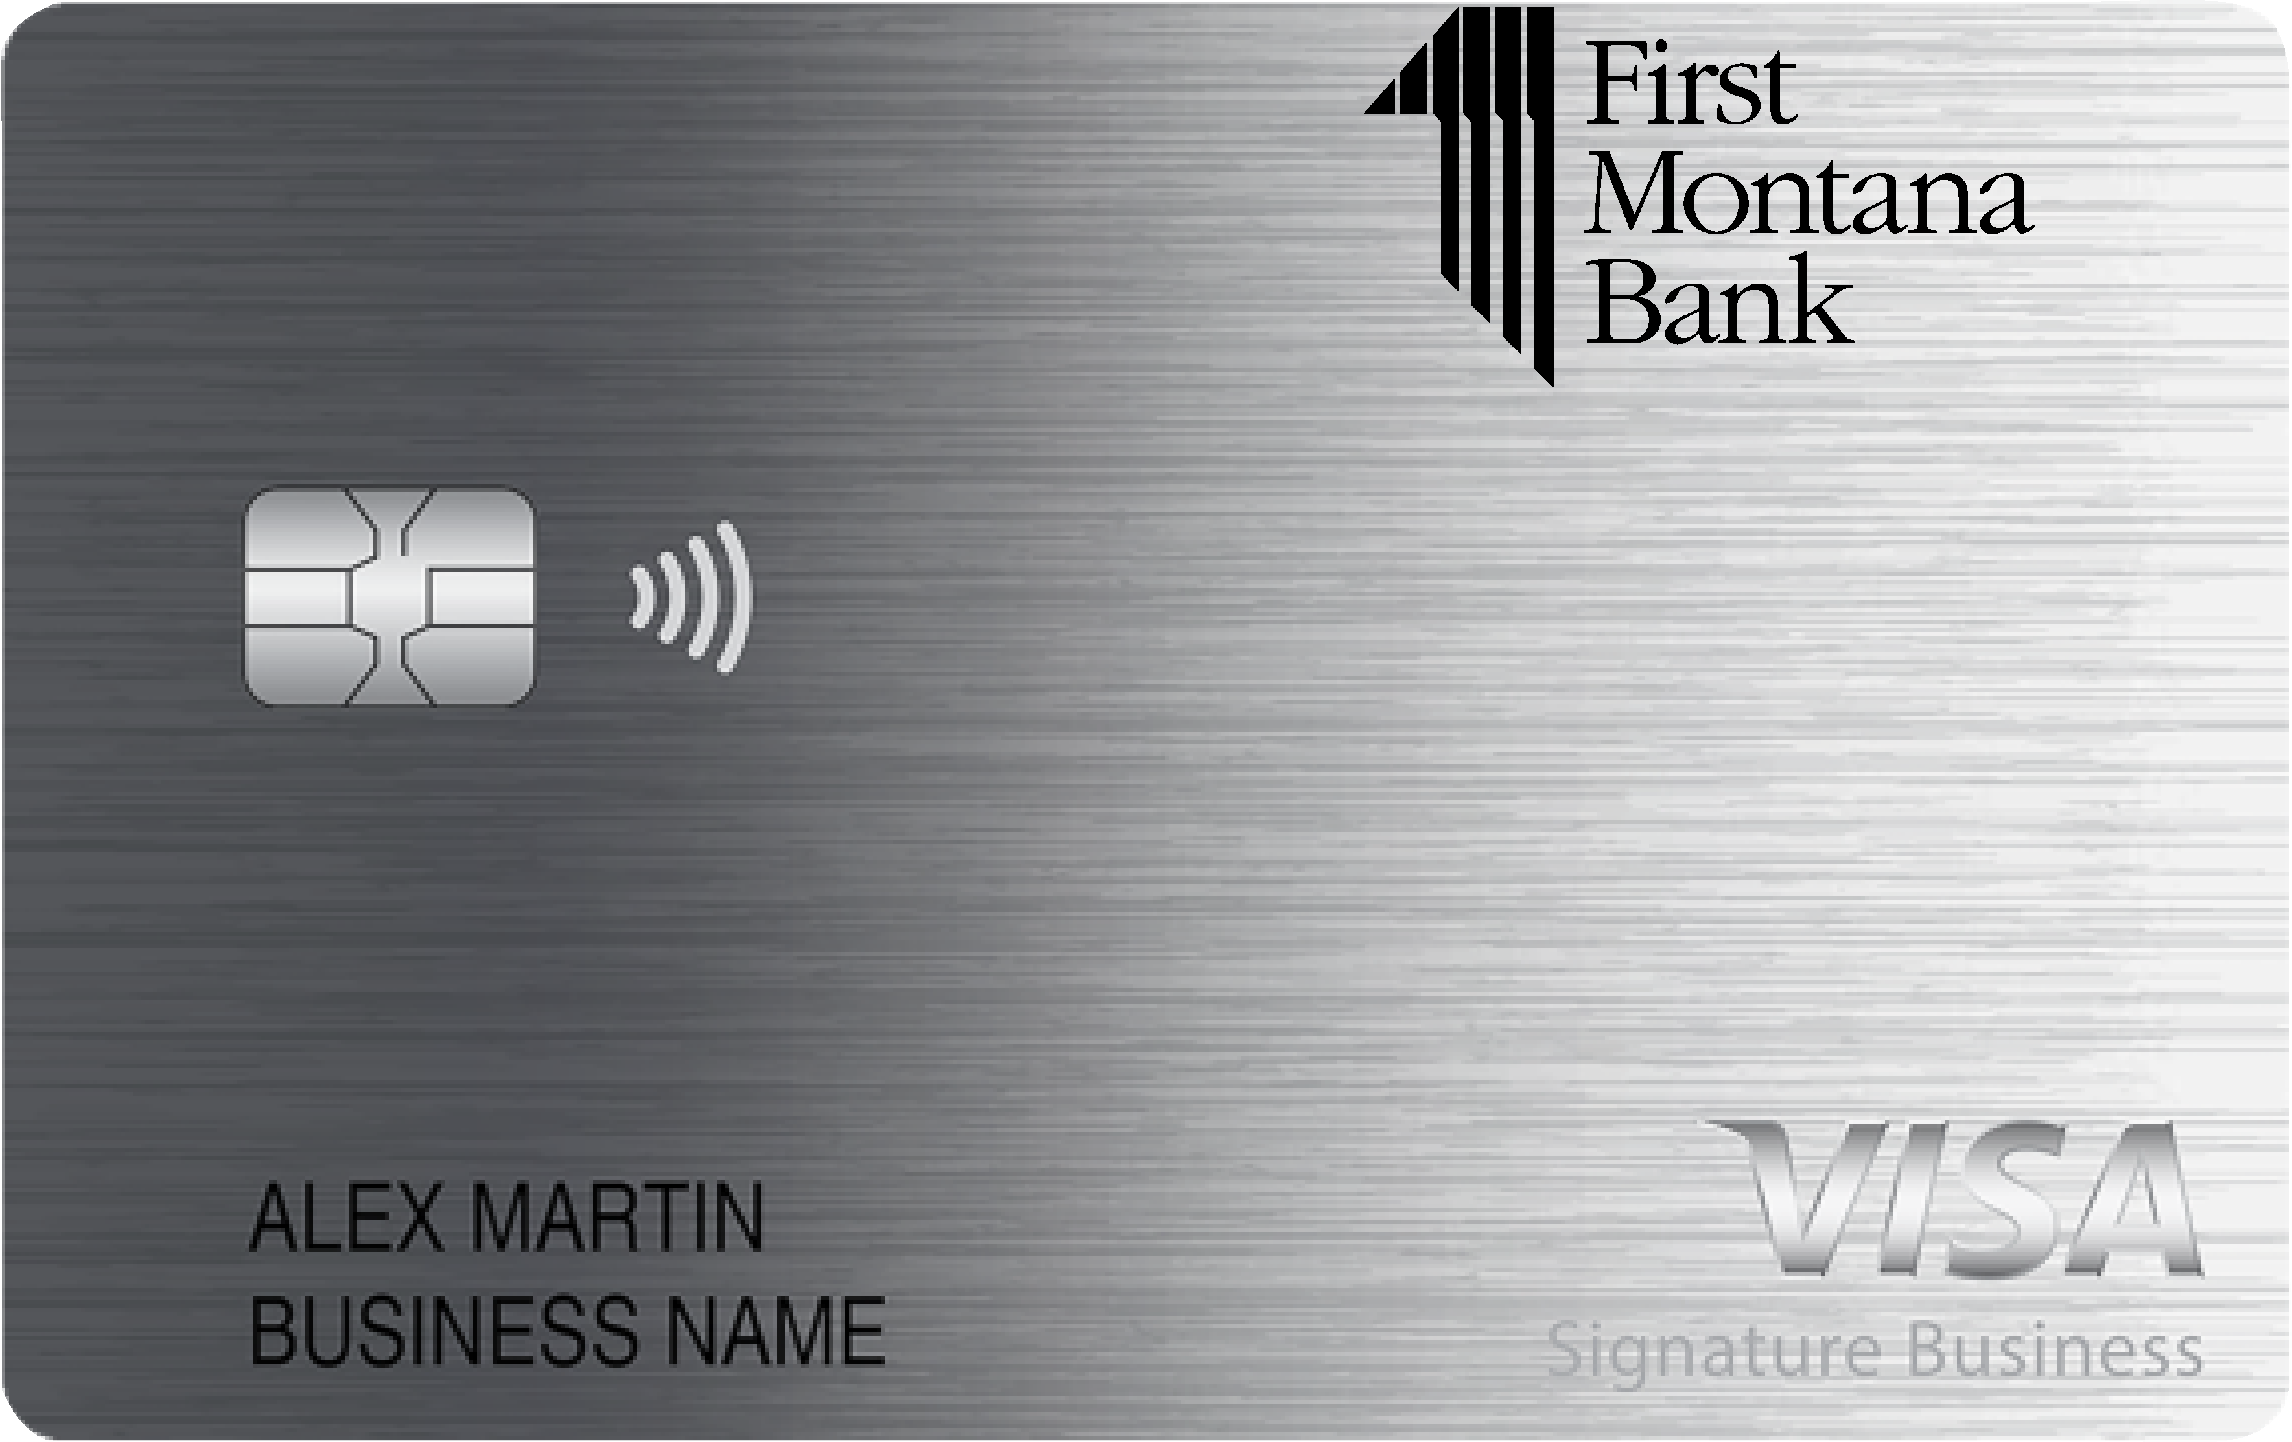 First Montana Bank Smart Business Rewards Card